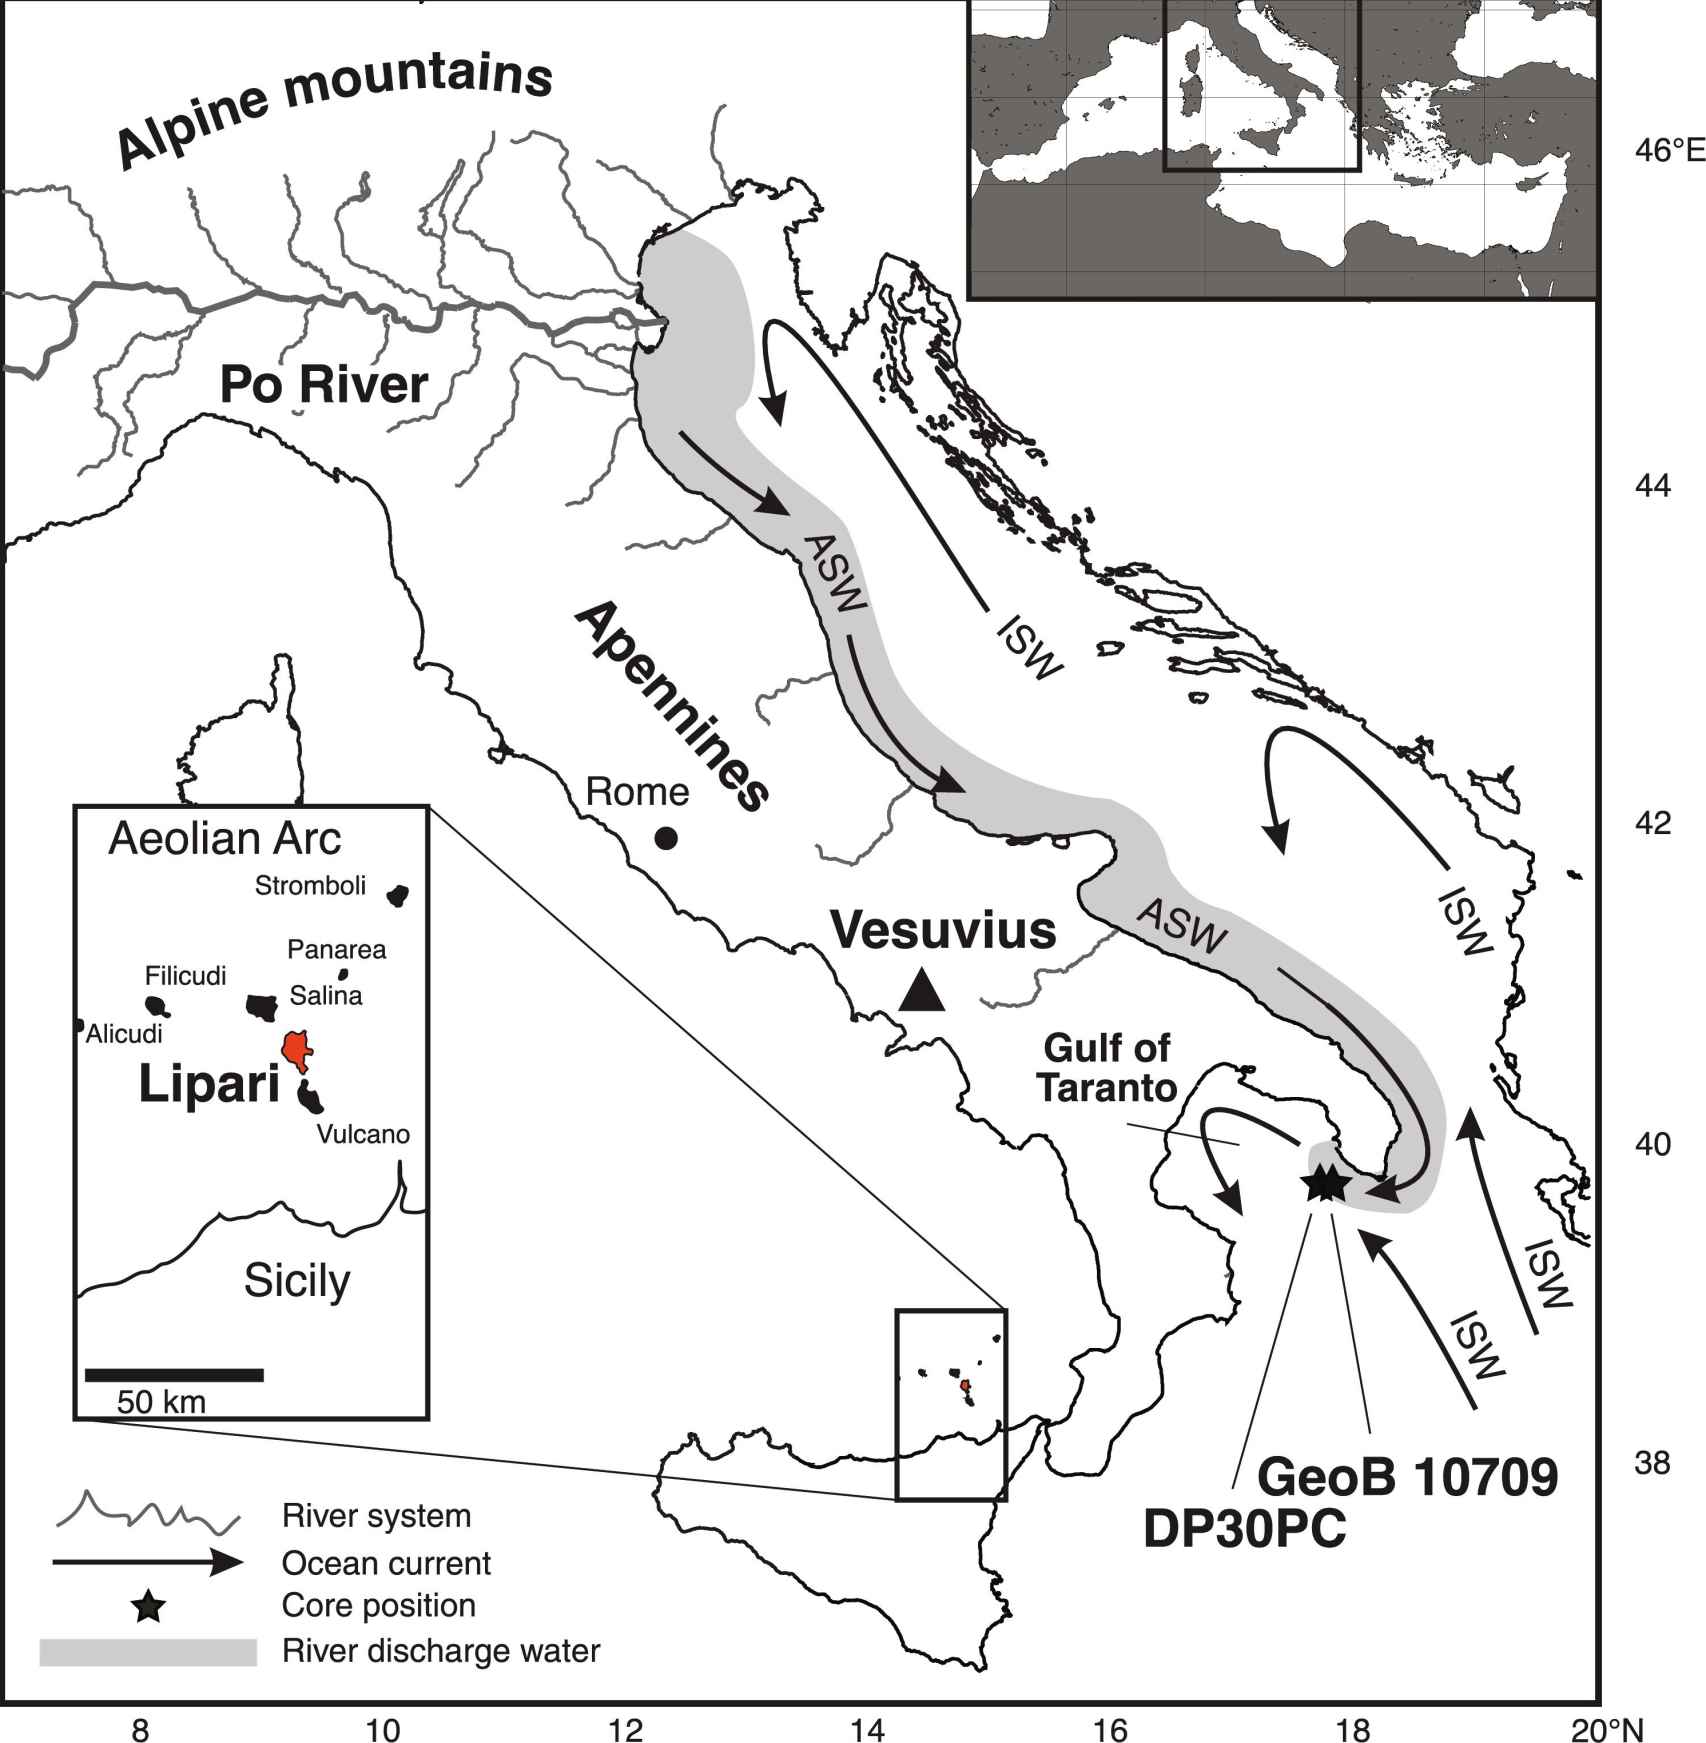 Mapa de Italia y el mar Adriático que indica los principales sistemas fluviales y características geográficas importantes